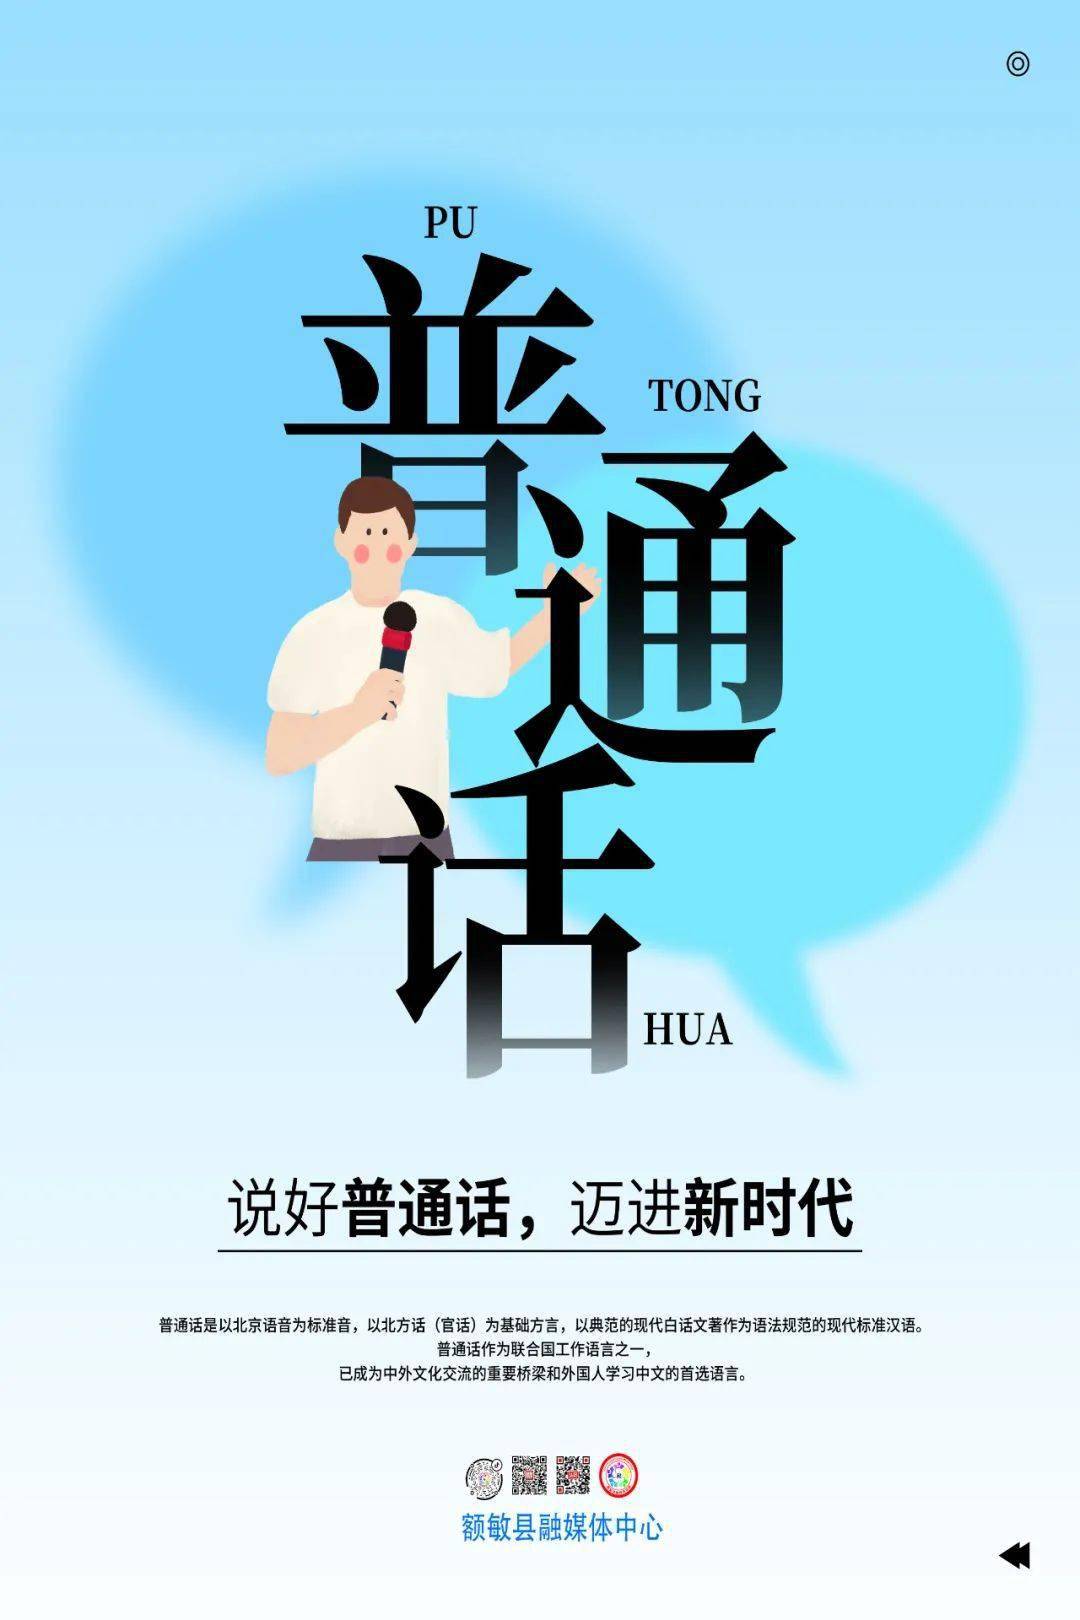 推普| 第24届全国推广普通话宣传周宣传海报